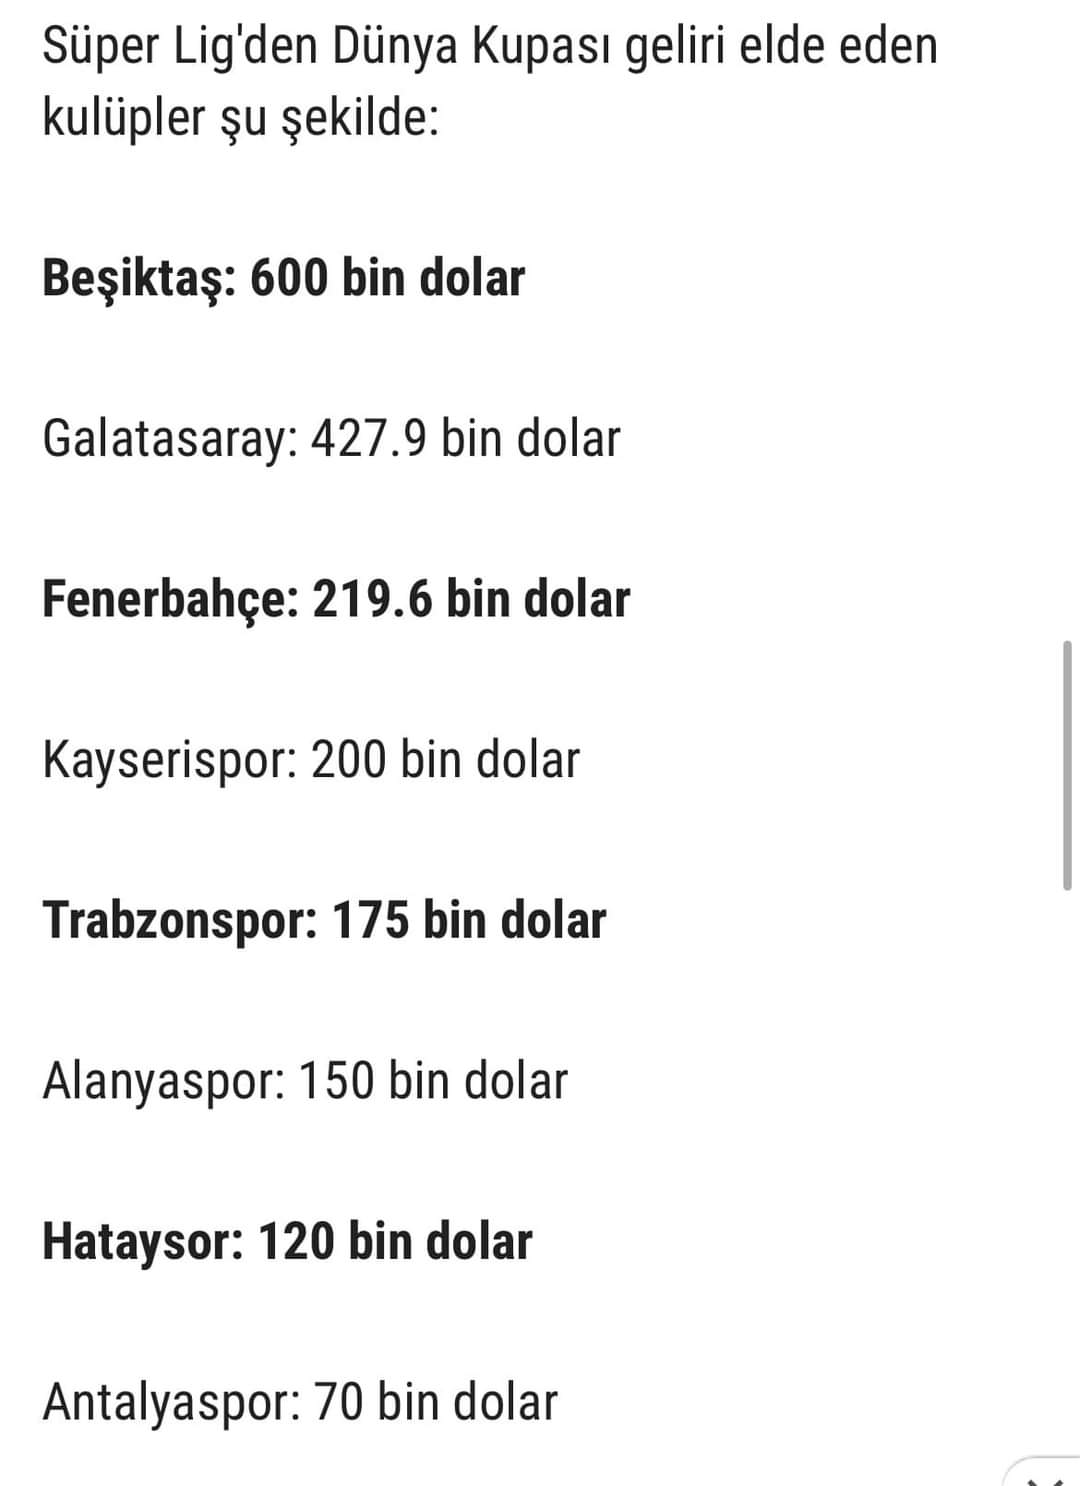 KAYSERİSPOR DÜNYA KUPASINDAN 200 BİN DOLAR KAZANDI 